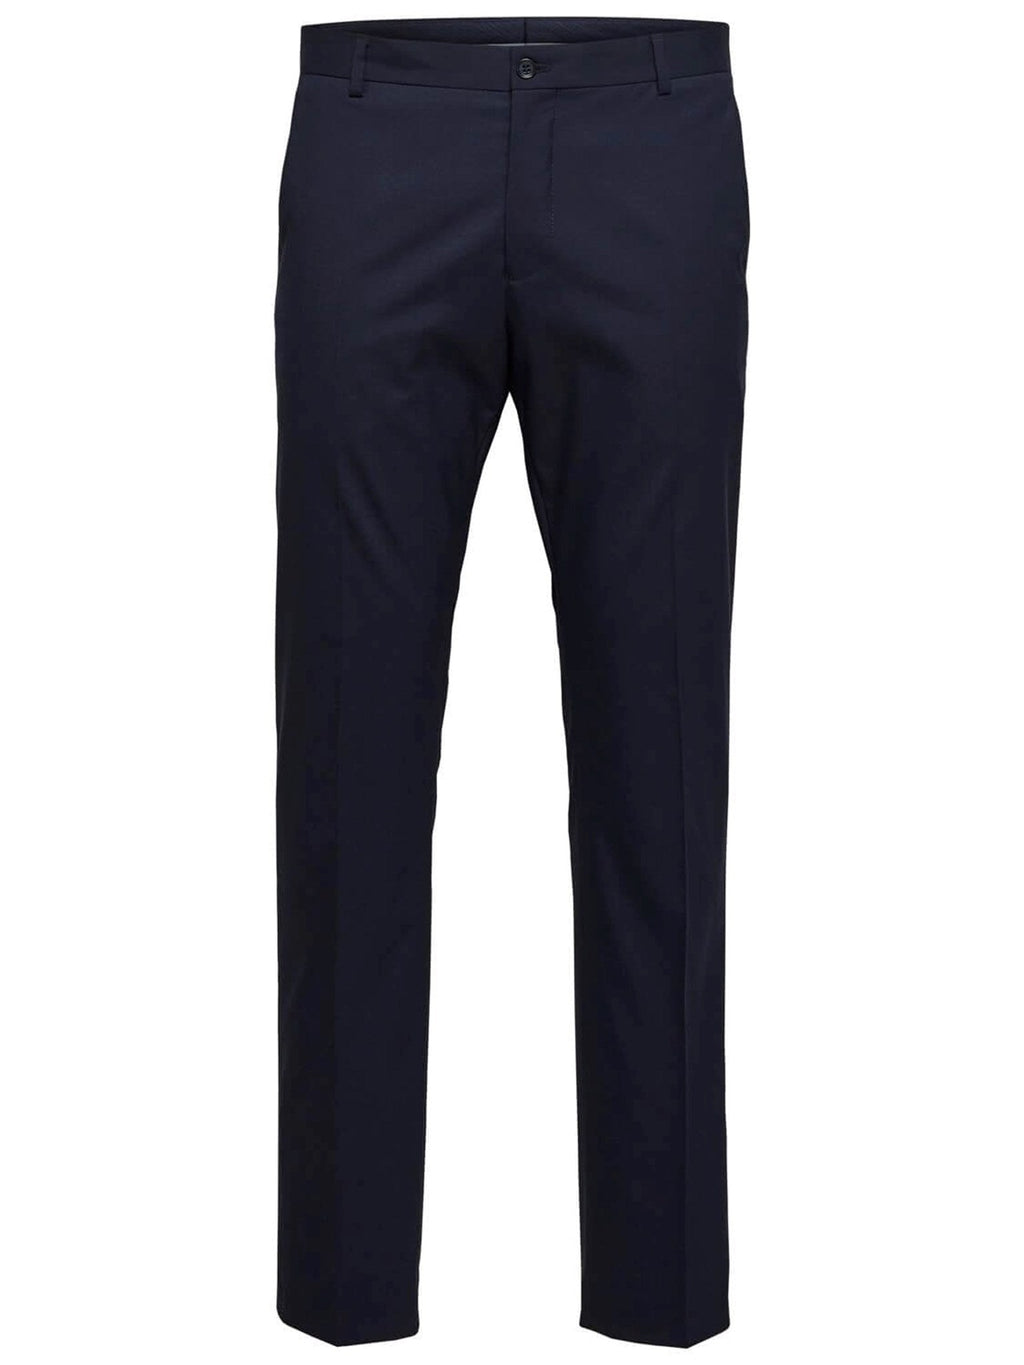 Slim fit suit pants - Navy